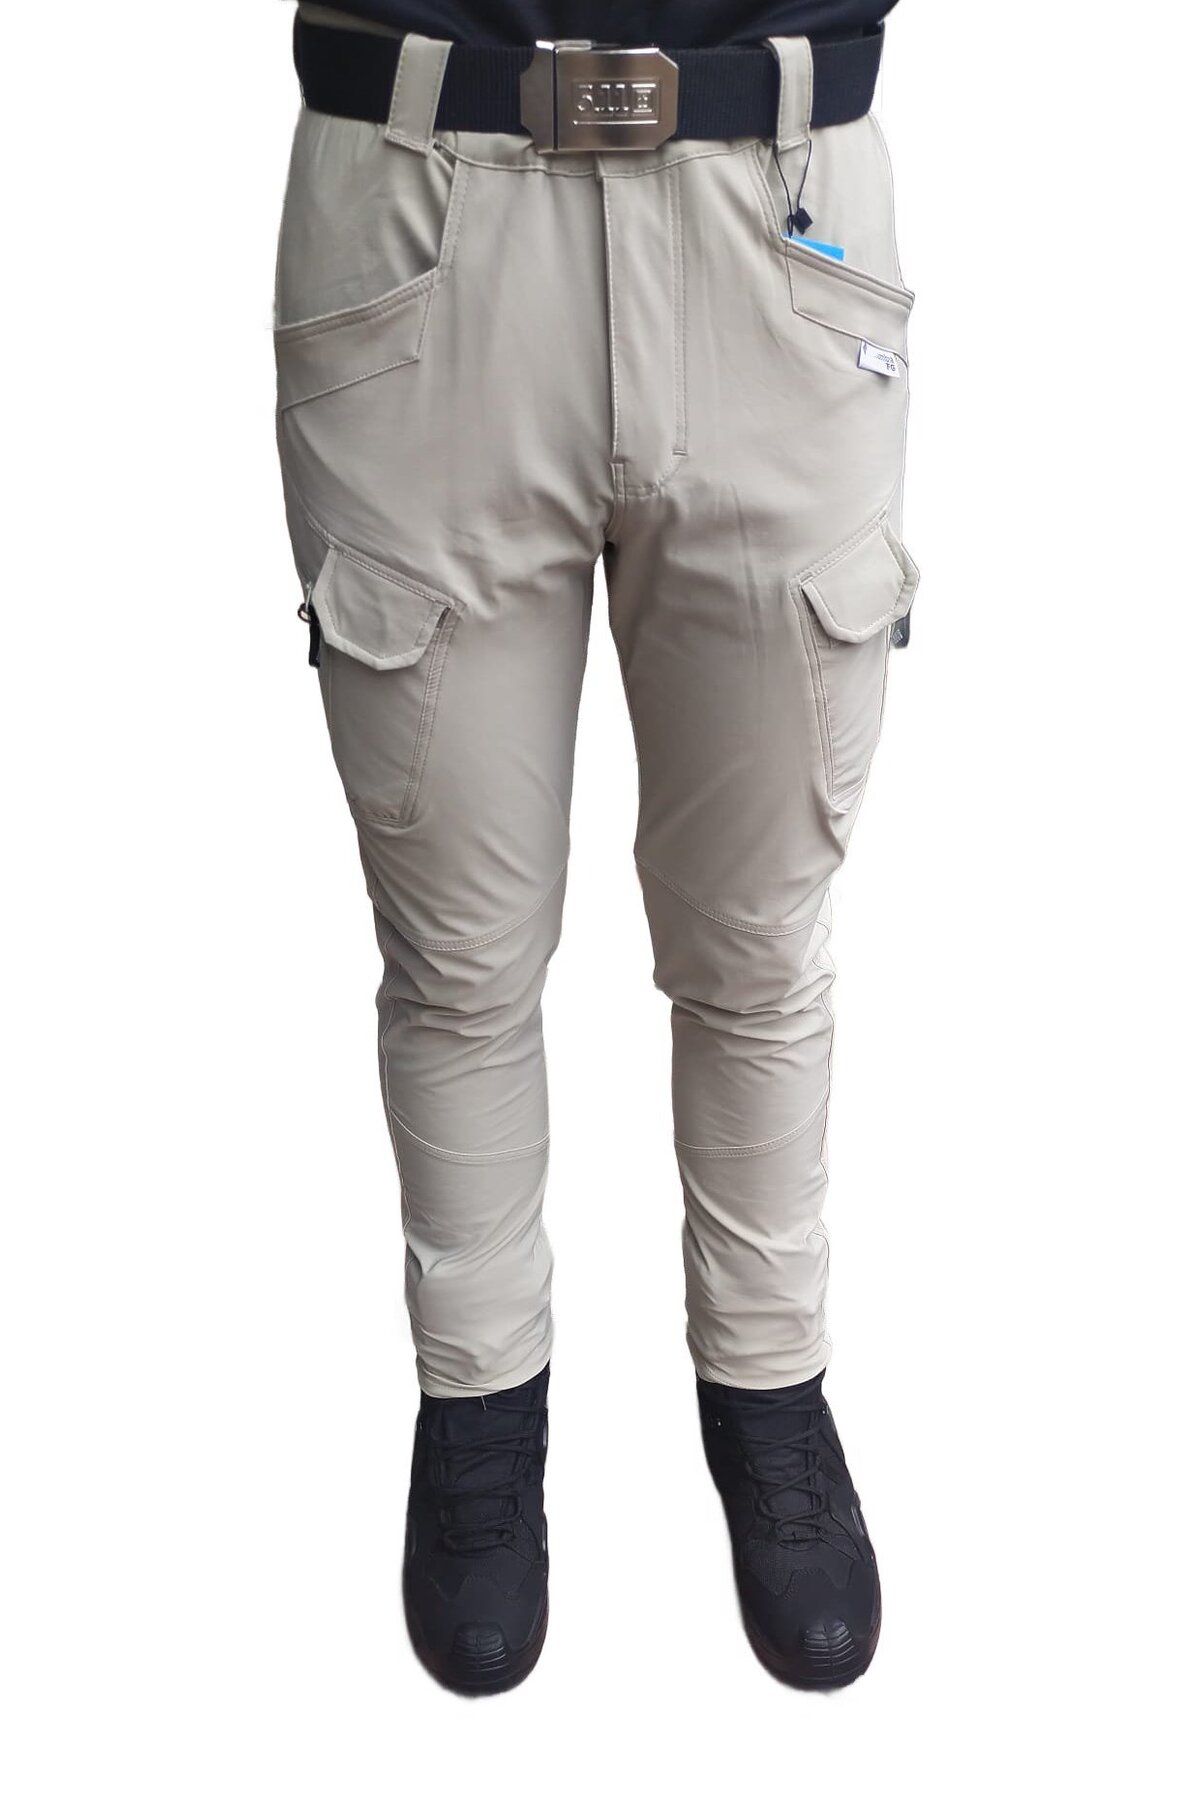 Mikro Taktikal outdoor cargocep yazlık likralı sıvı itici kumaş 8 cepli pantolon